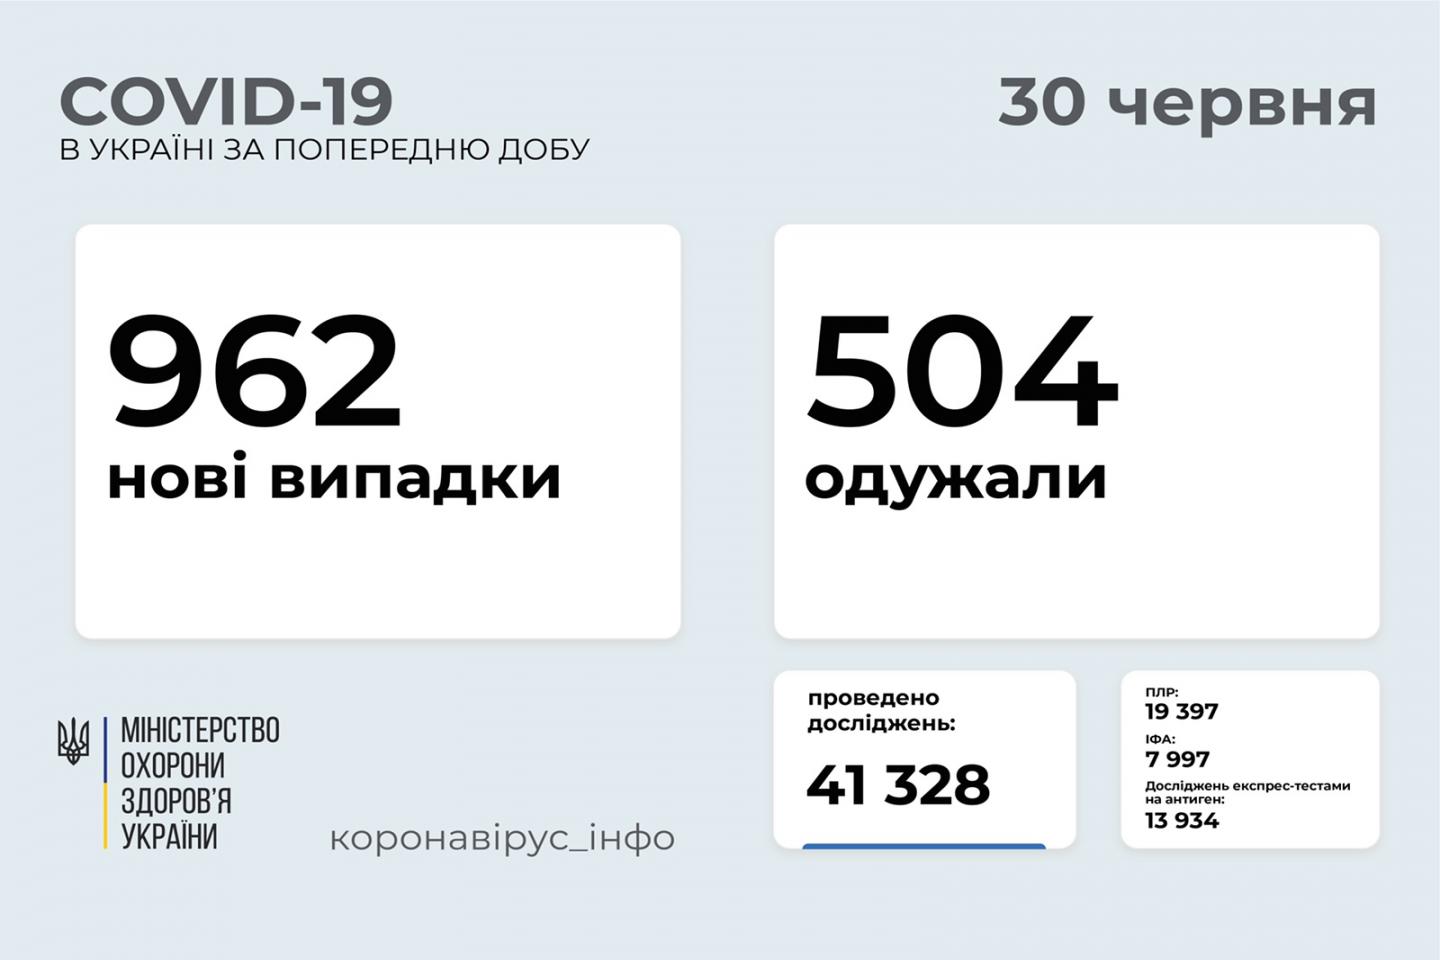 http://dunrada.gov.ua/uploadfile/archive_news/2021/07/30/2021-07-30_2267/images/images-30280.jpg